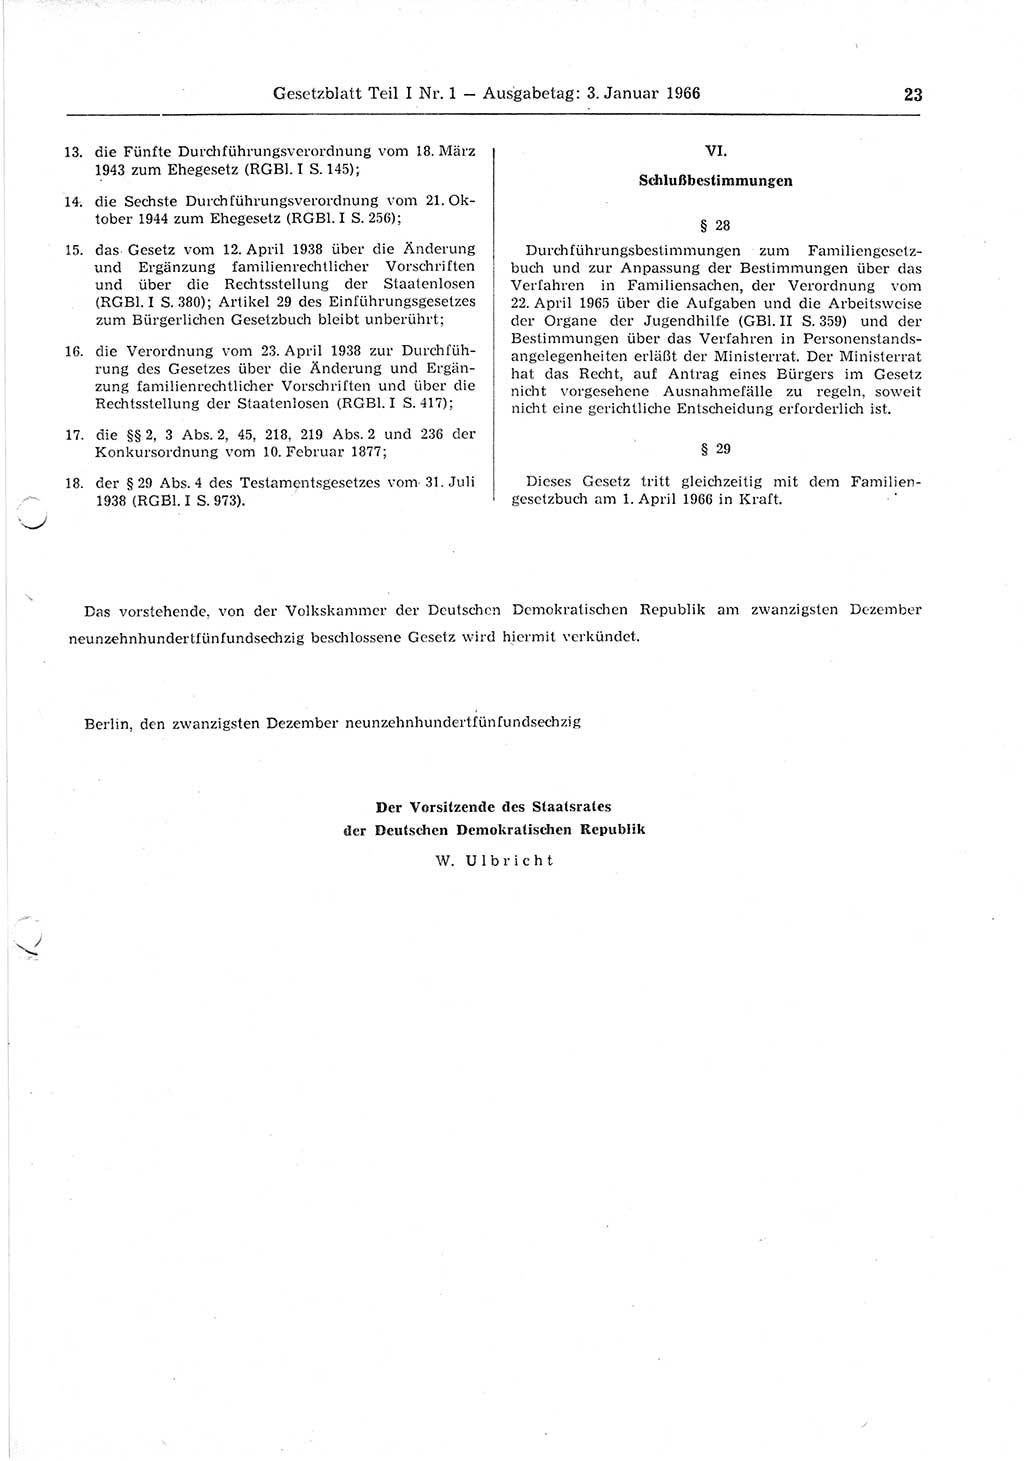 Gesetzblatt (GBl.) der Deutschen Demokratischen Republik (DDR) Teil Ⅰ 1966, Seite 23 (GBl. DDR Ⅰ 1966, S. 23)